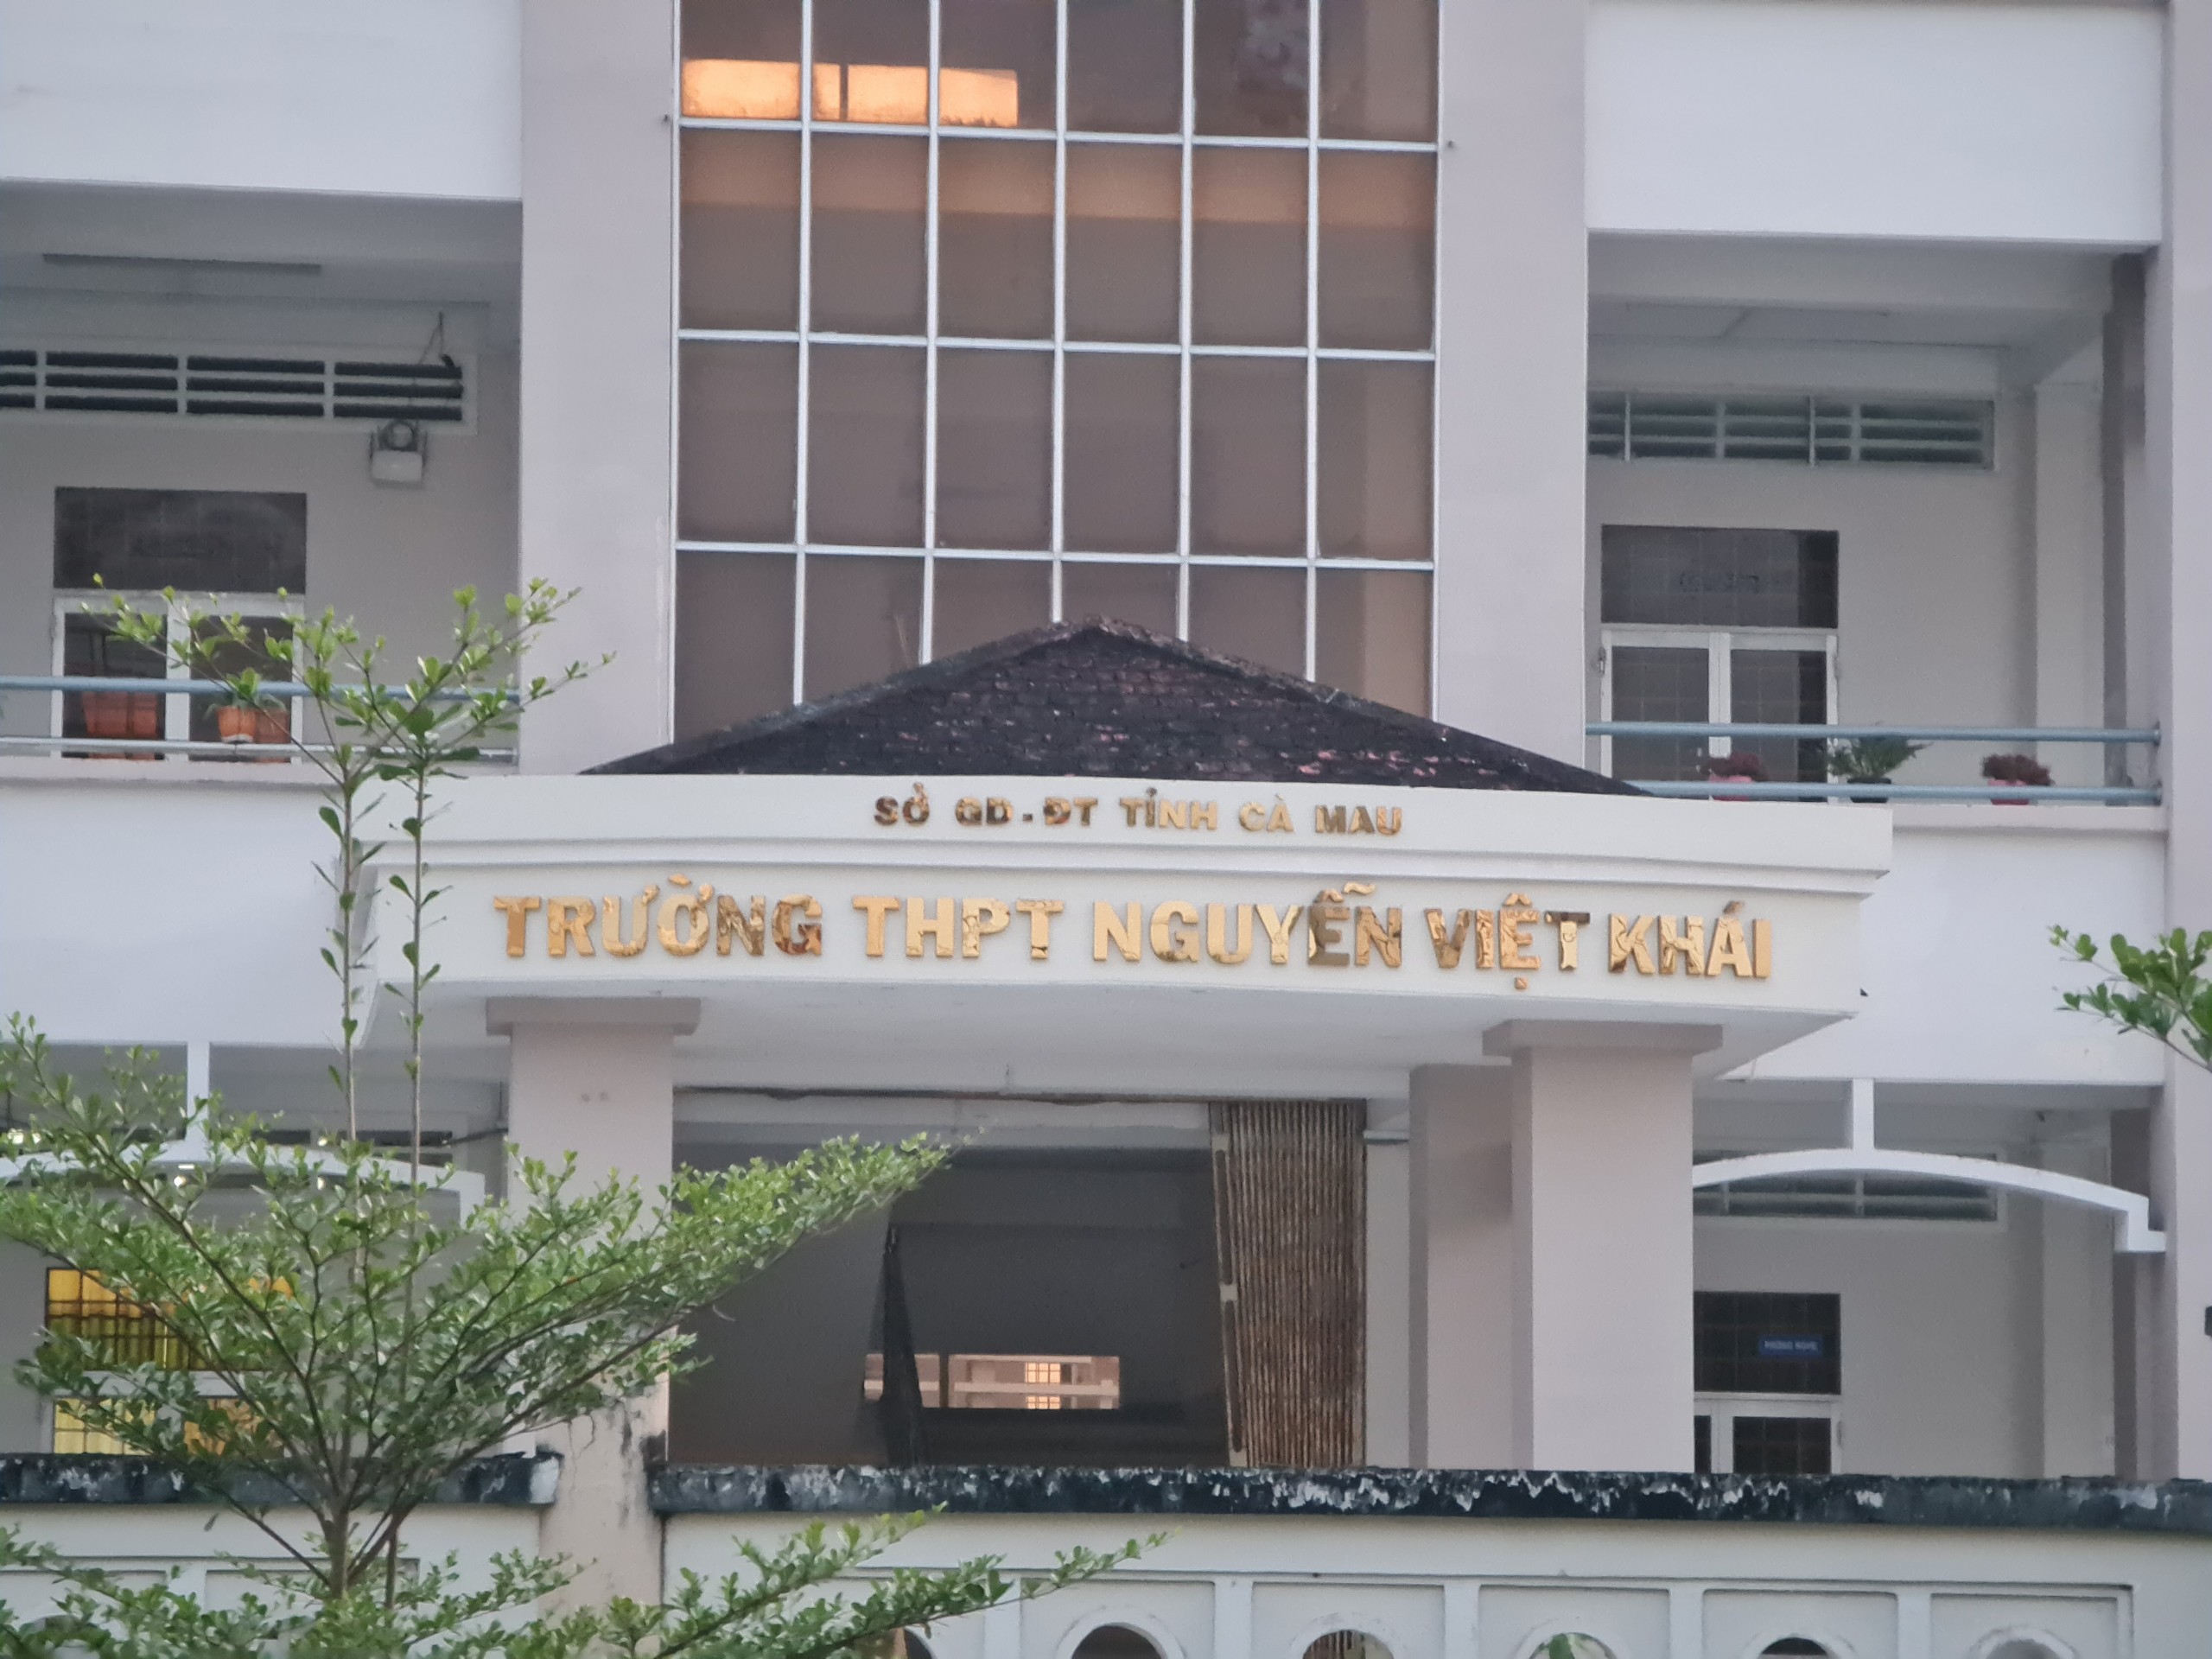 Trường THPT Nguyễn Việt Khái nơi K. và H. đang học.